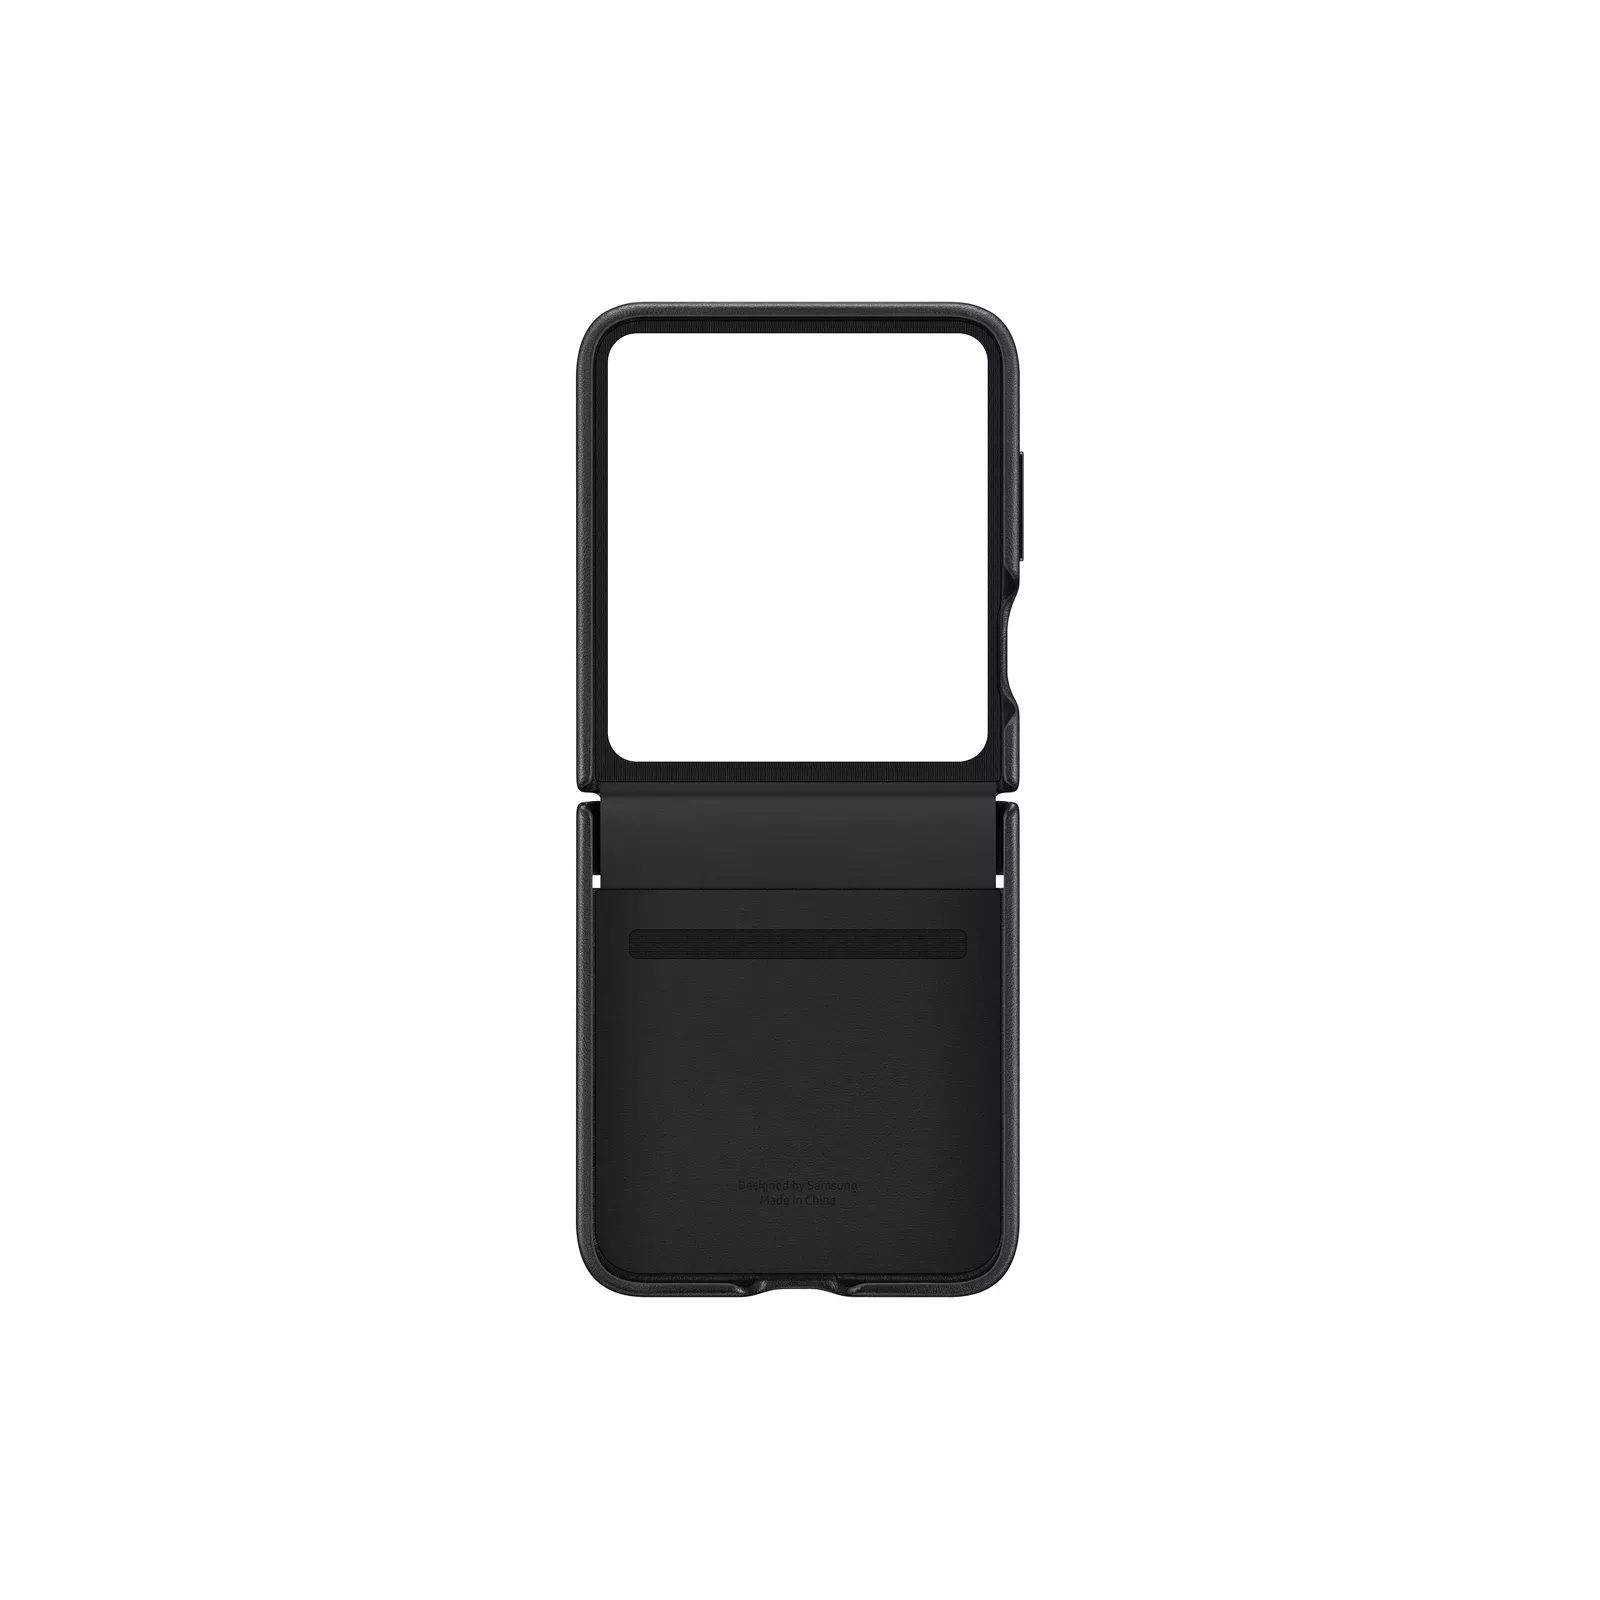 LOUIS VUITTON LV LOGO ICON Samsung Galaxy Z Flip 3 Case Cover